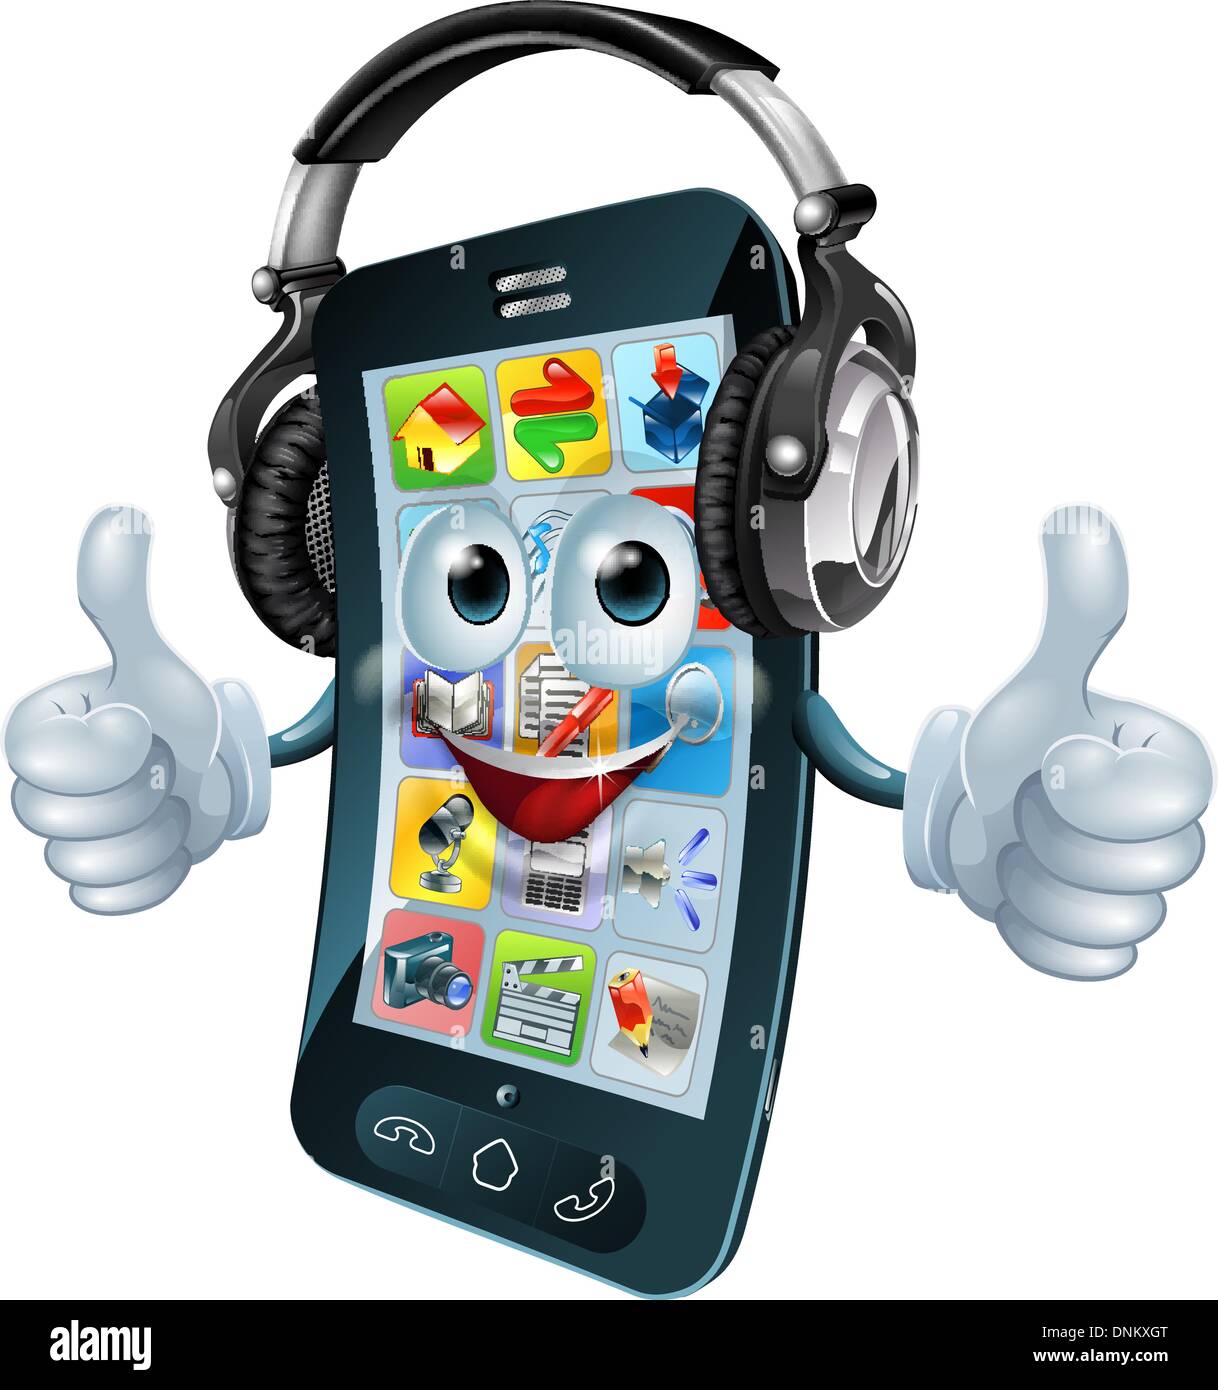 Un telefono cellulare personaggio dei cartoni animati musica con le cuffie a dare il pollice in su. Potrebbe essere un concetto per un app musica o simili. Illustrazione Vettoriale